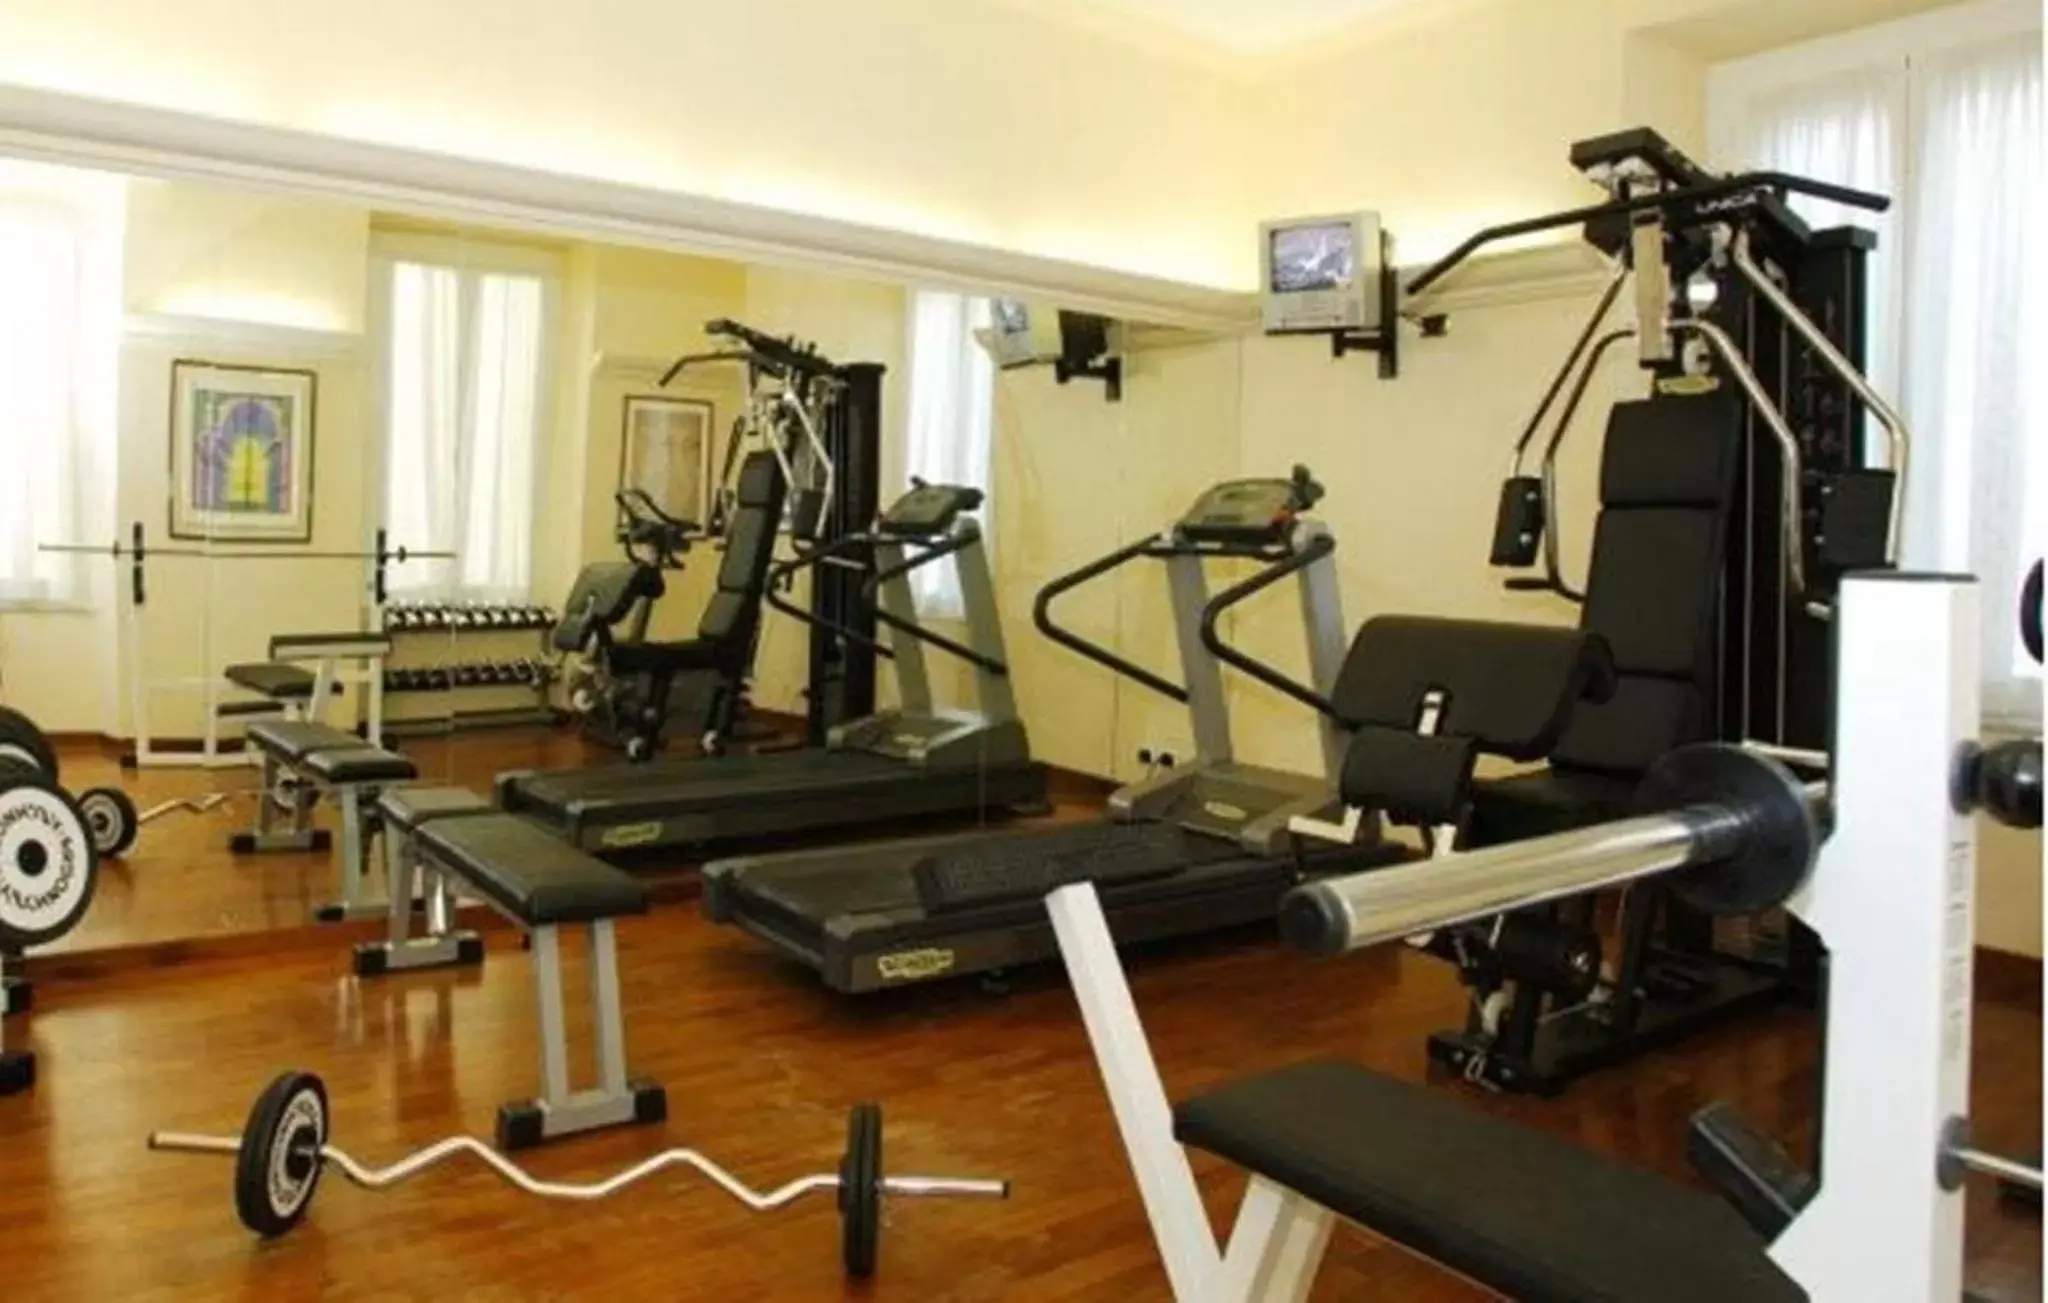 Fitness centre/facilities, Fitness Center/Facilities in Hotel Jolanda